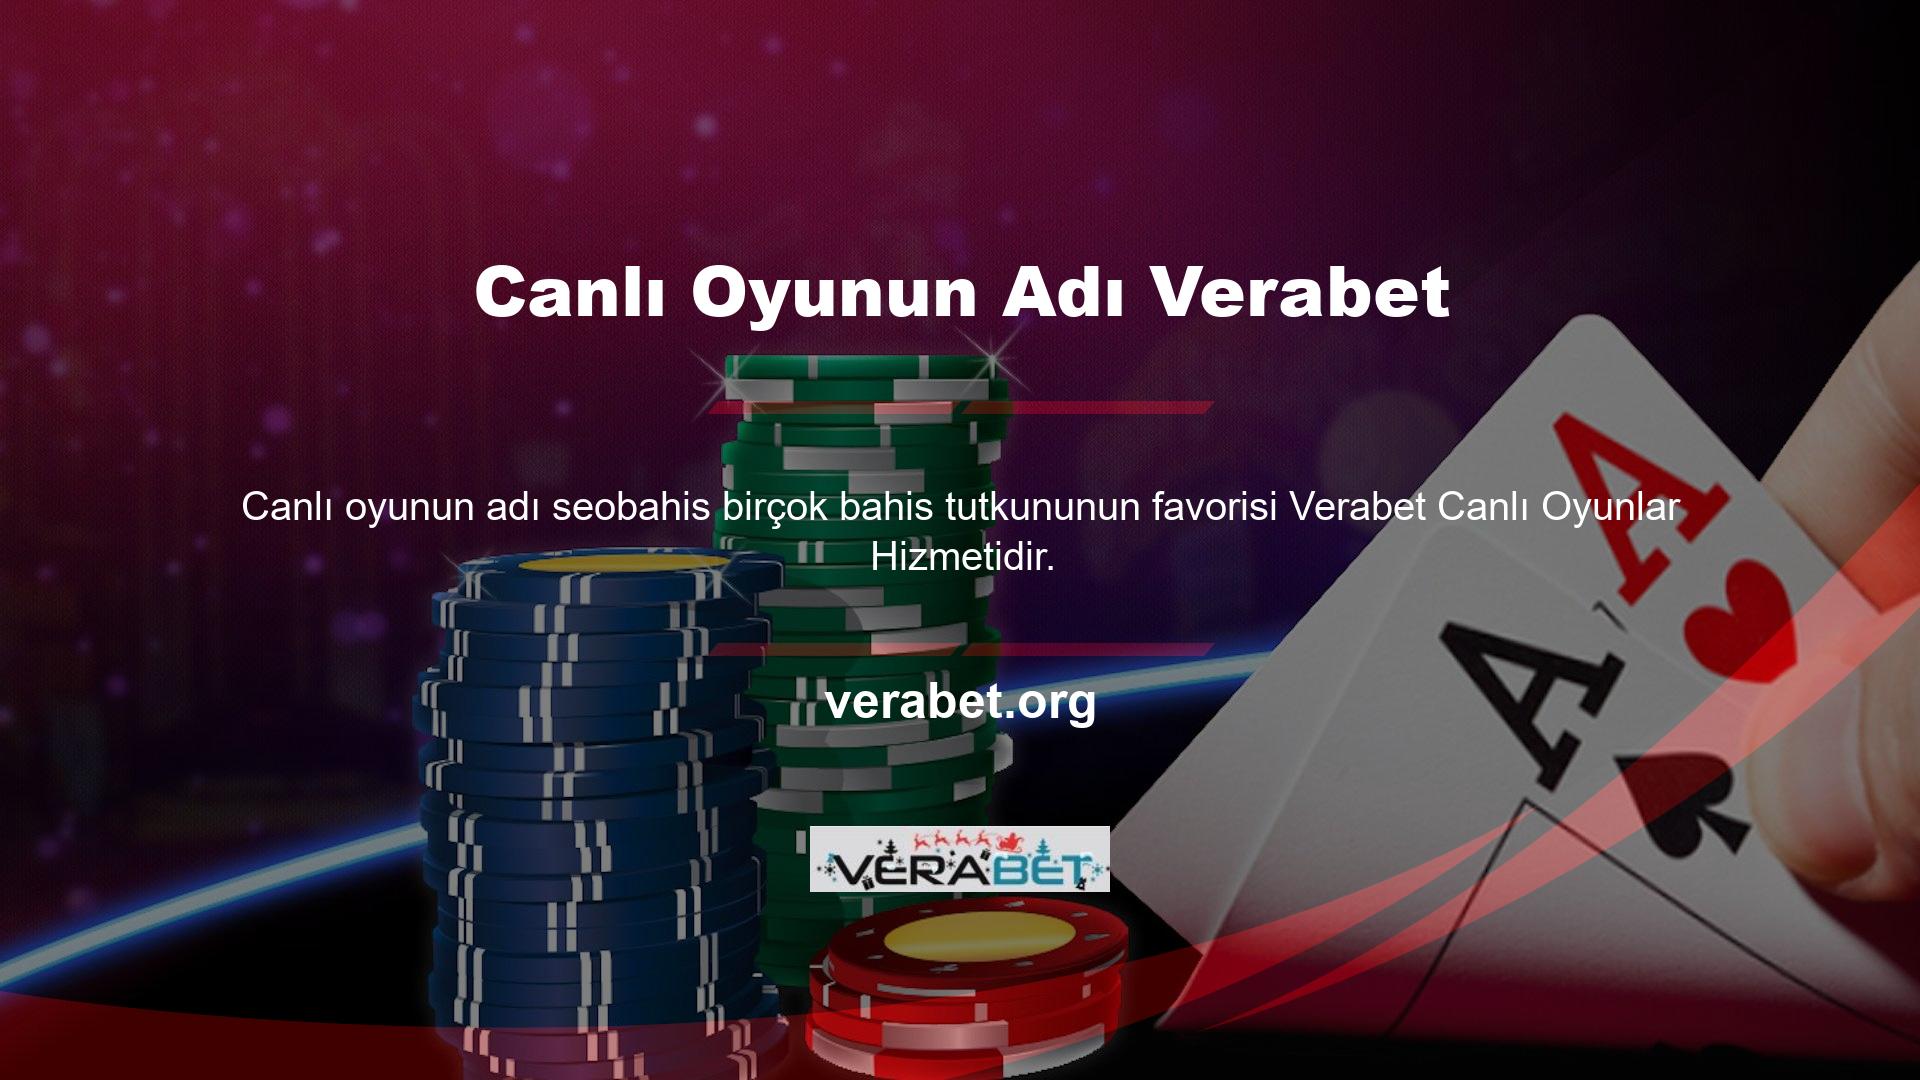 Bahisçiler, diğer birçok casino ve spor oyununun yanı sıra Verabet bahis sitesinin canlı oyun özelliğini de kullanmaktadır